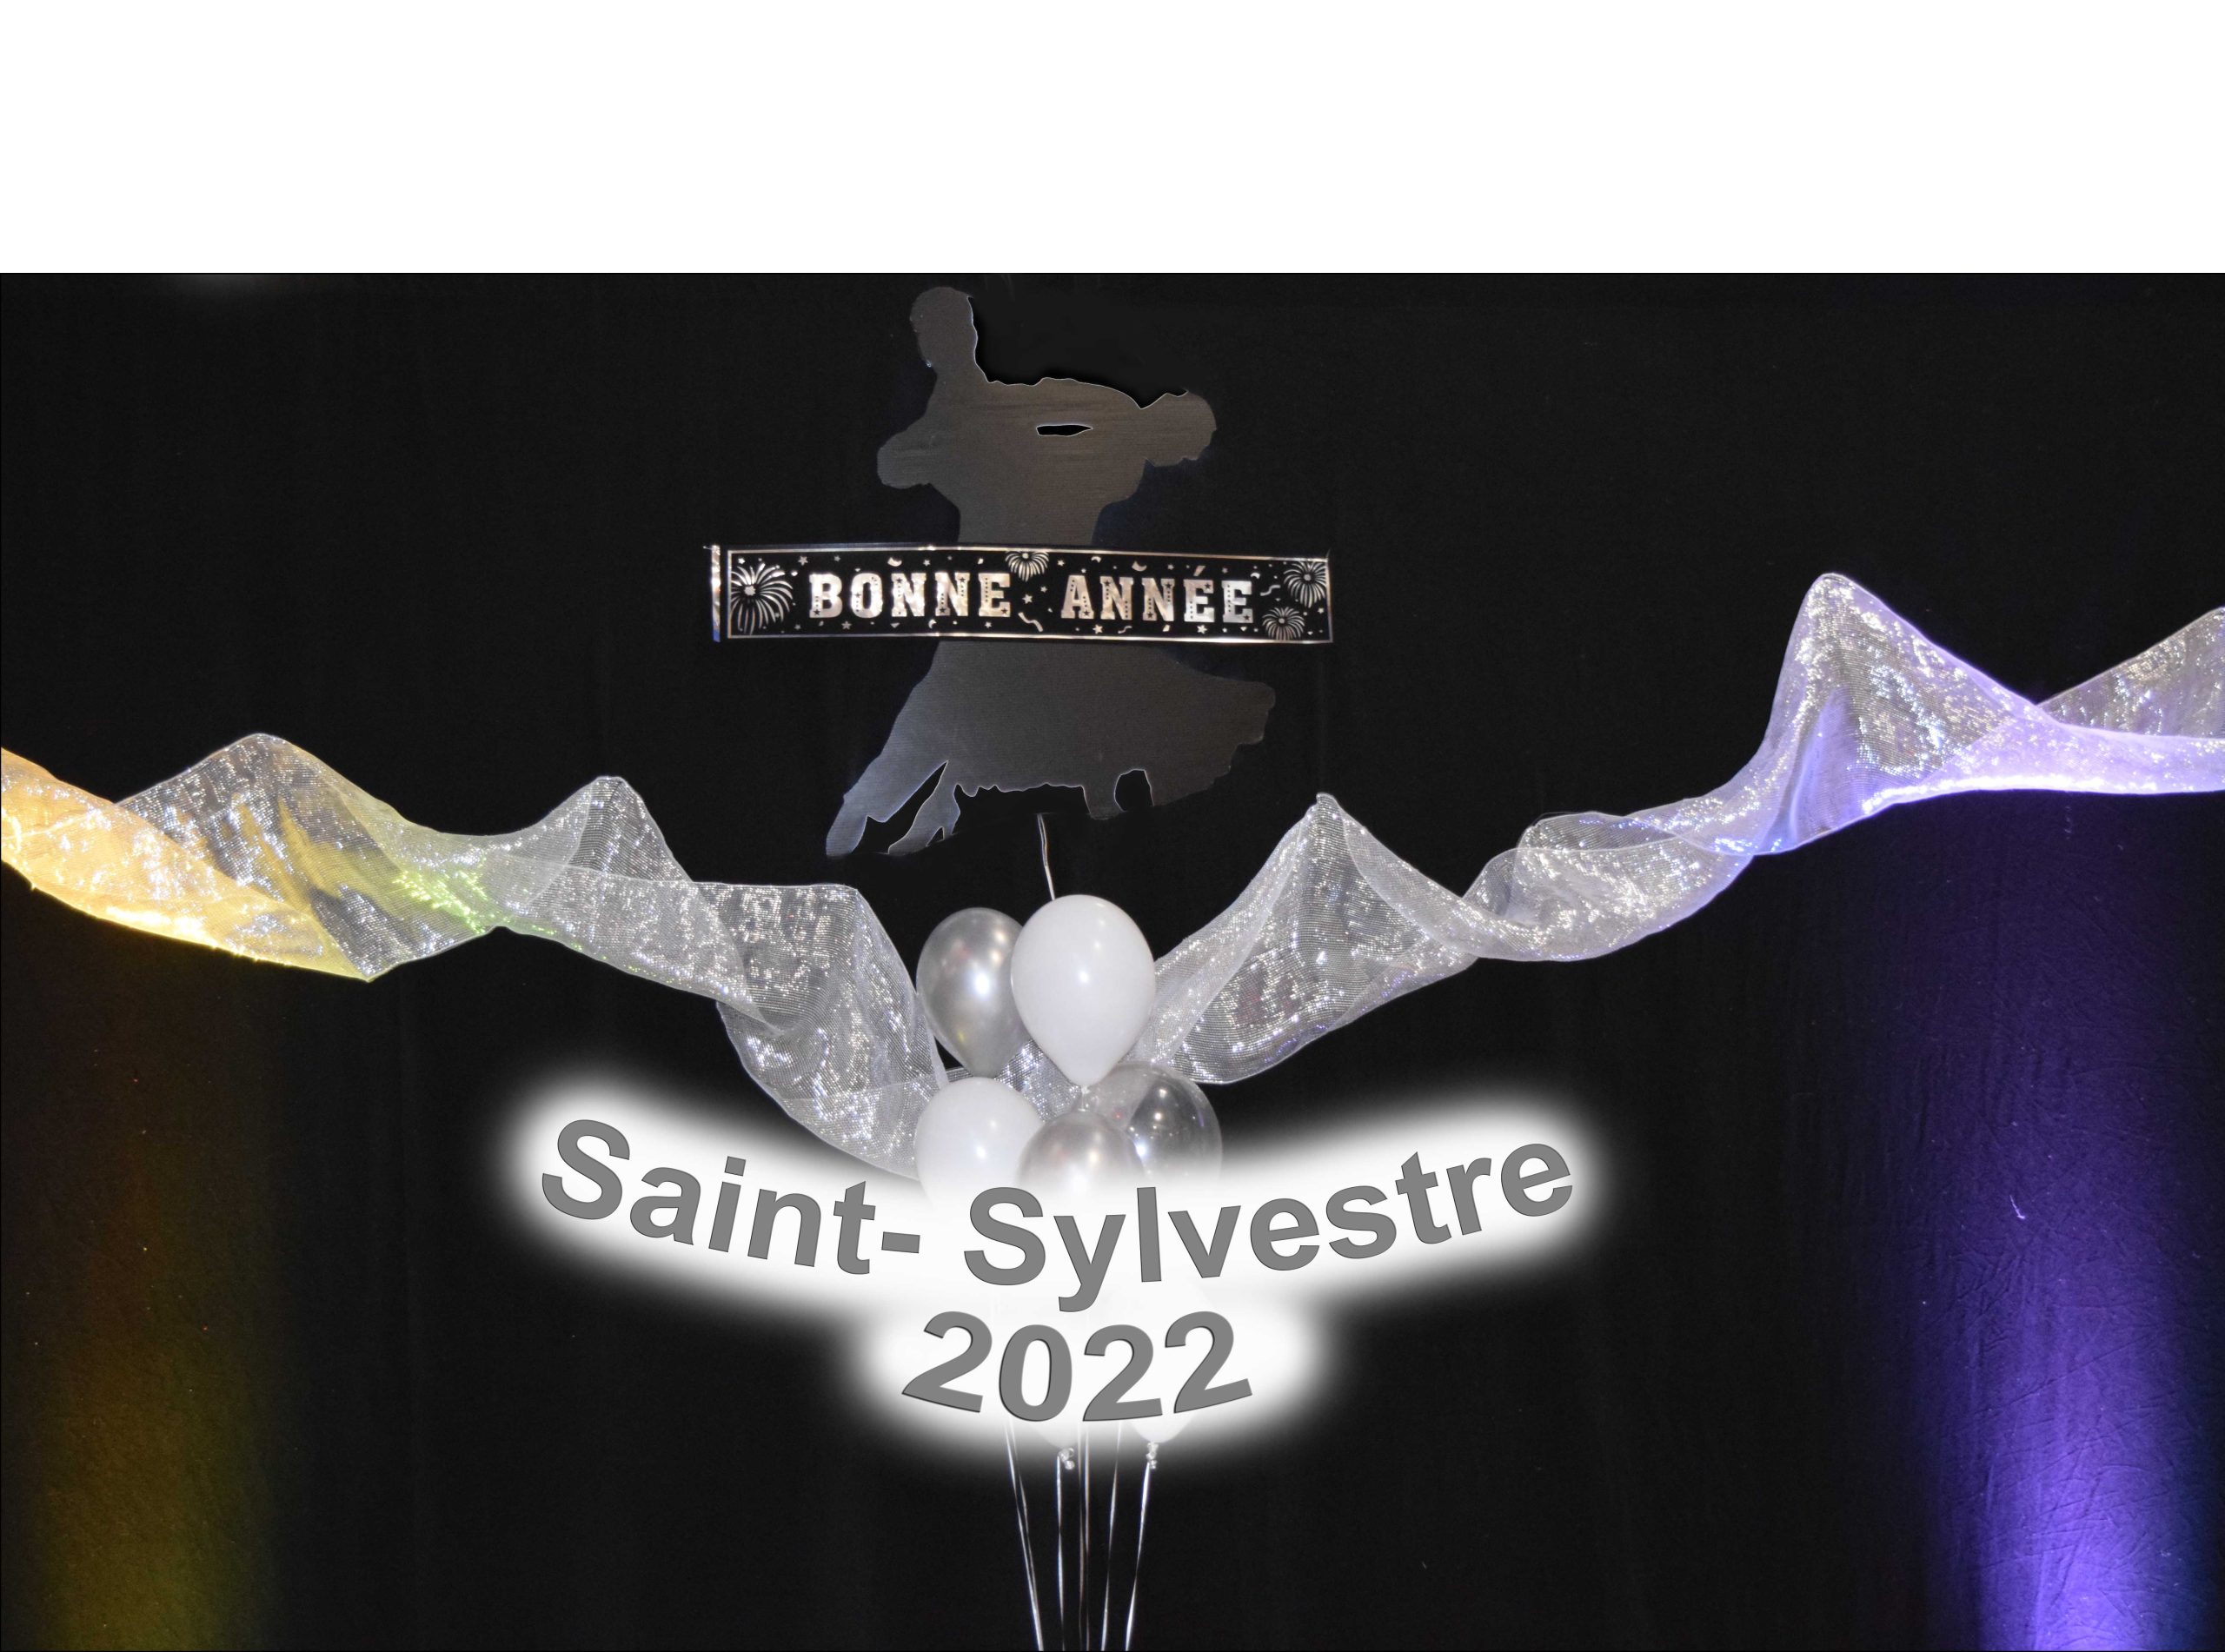 Saint-Sylvestre